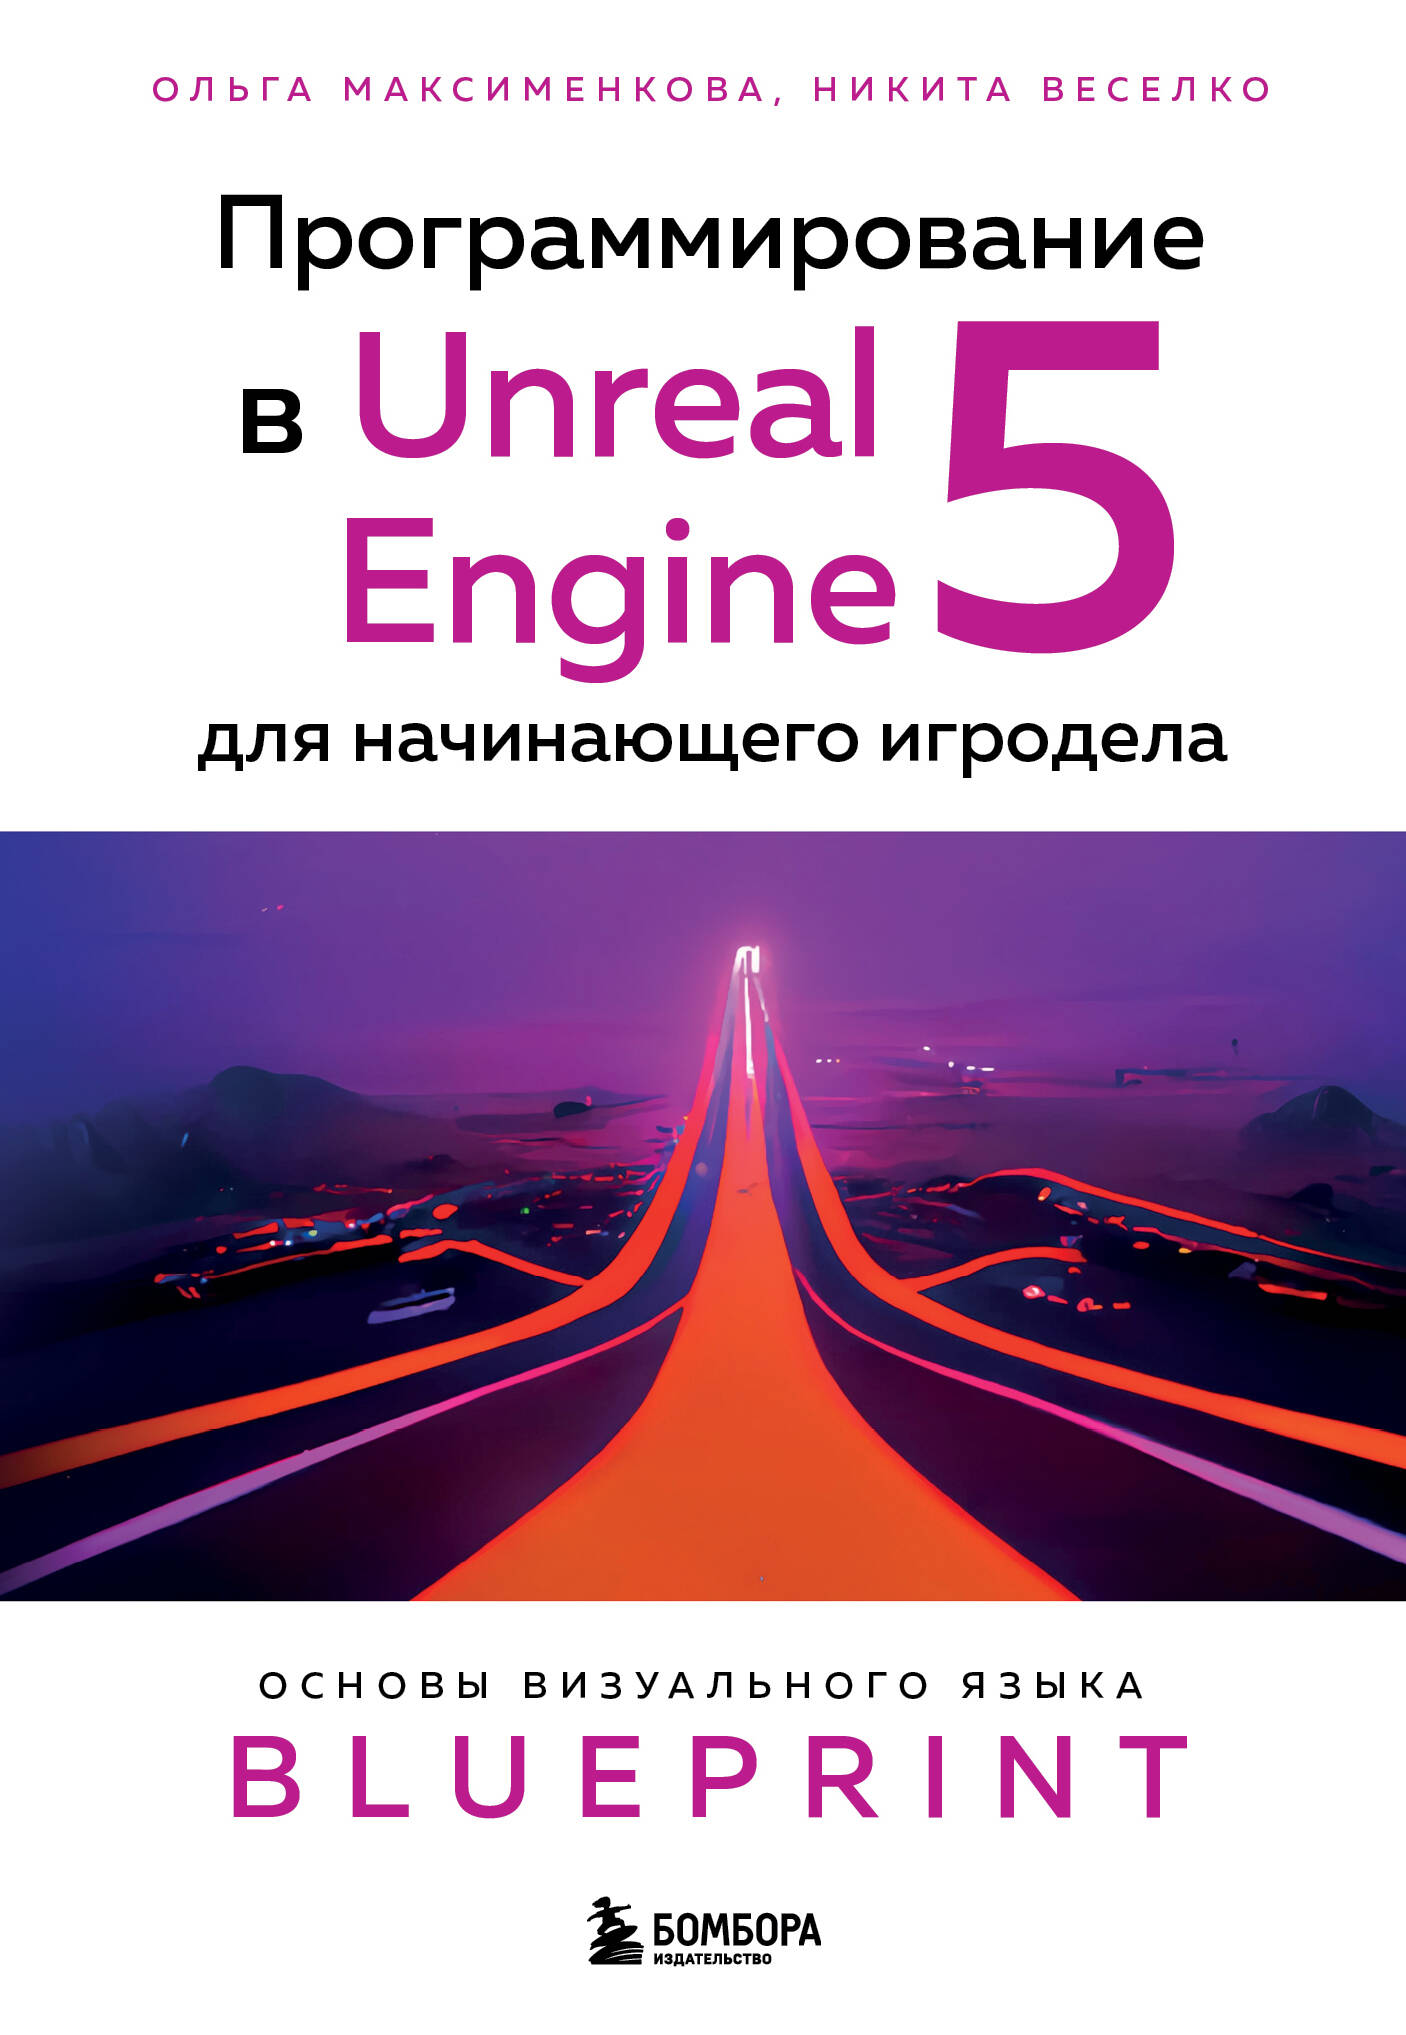 Программирование в Unreal Engine 5 для начинающего игродела. Основы визуального языка Blueprint куксон арам даулингсока райан крамплер клинтон разработка игр на unreal engine 4 за 24 часа